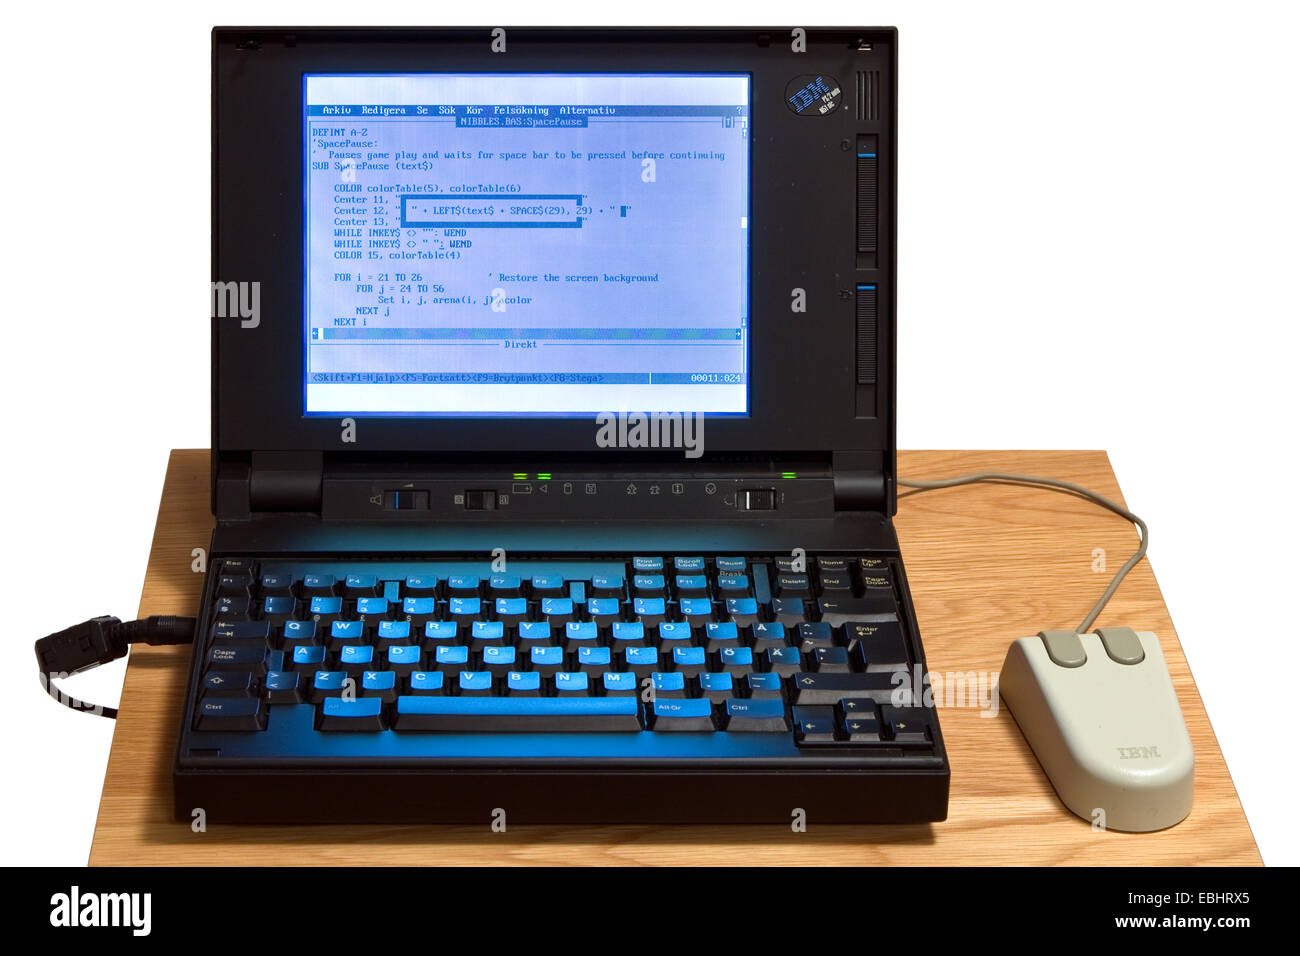 Un ordenador portátil IBM desde principios de la década de los noventa que muestra el lenguaje de programación BASIC. Foto de stock